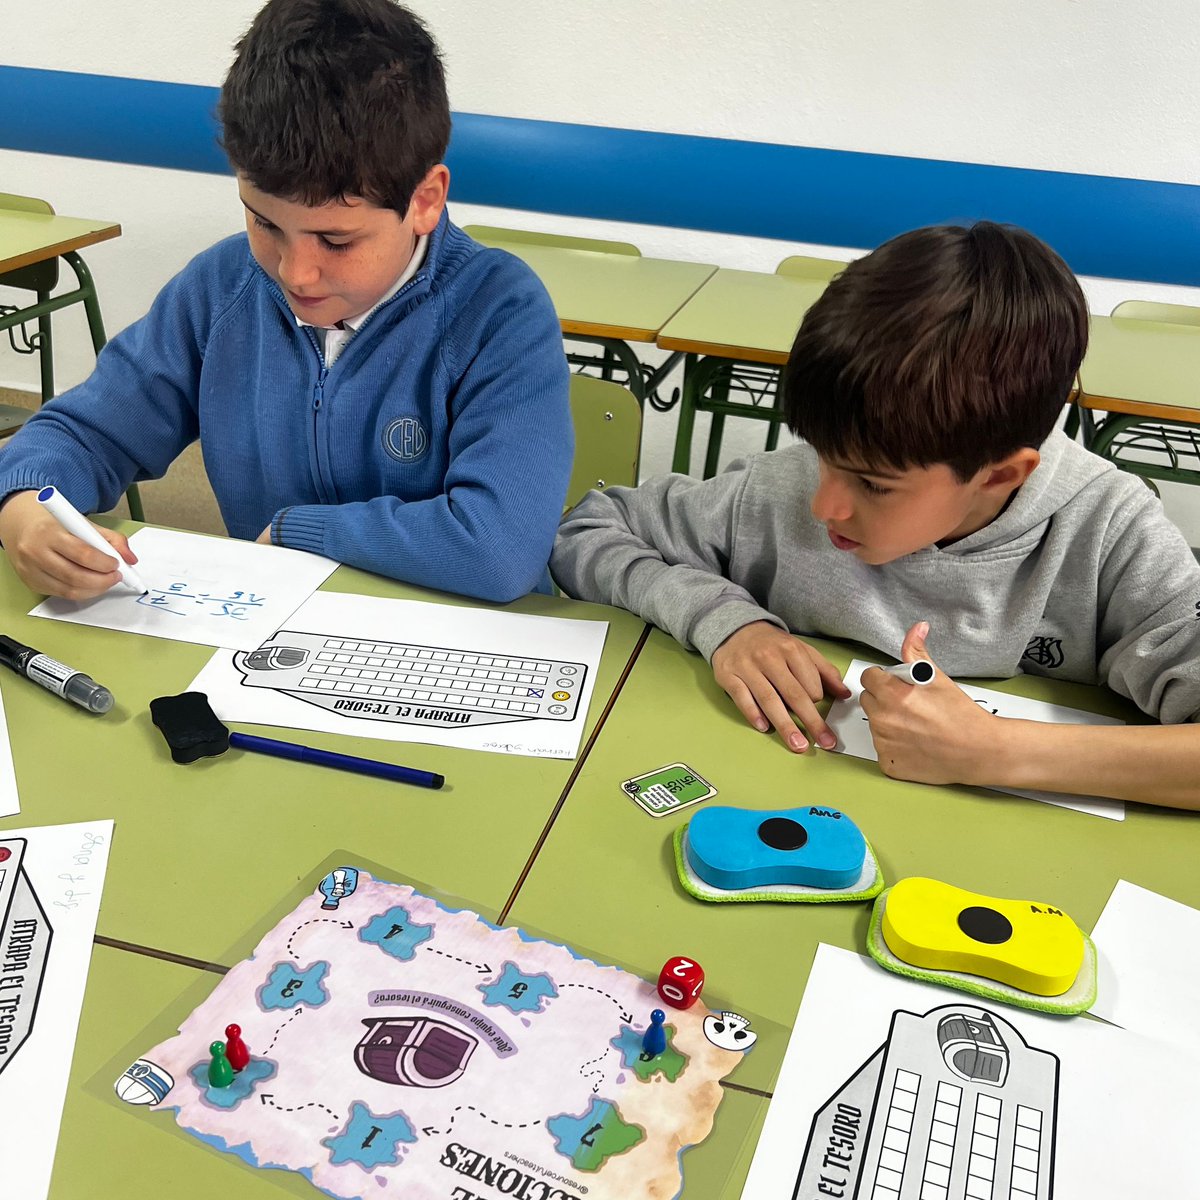 En 6°EPO ponemos en práctica las fracciones y los números mixtos a través de los juegos de mesa. ¡Nos encanta el trabajo en equipo! #colegiosHHCC #EducaciónVicenciana